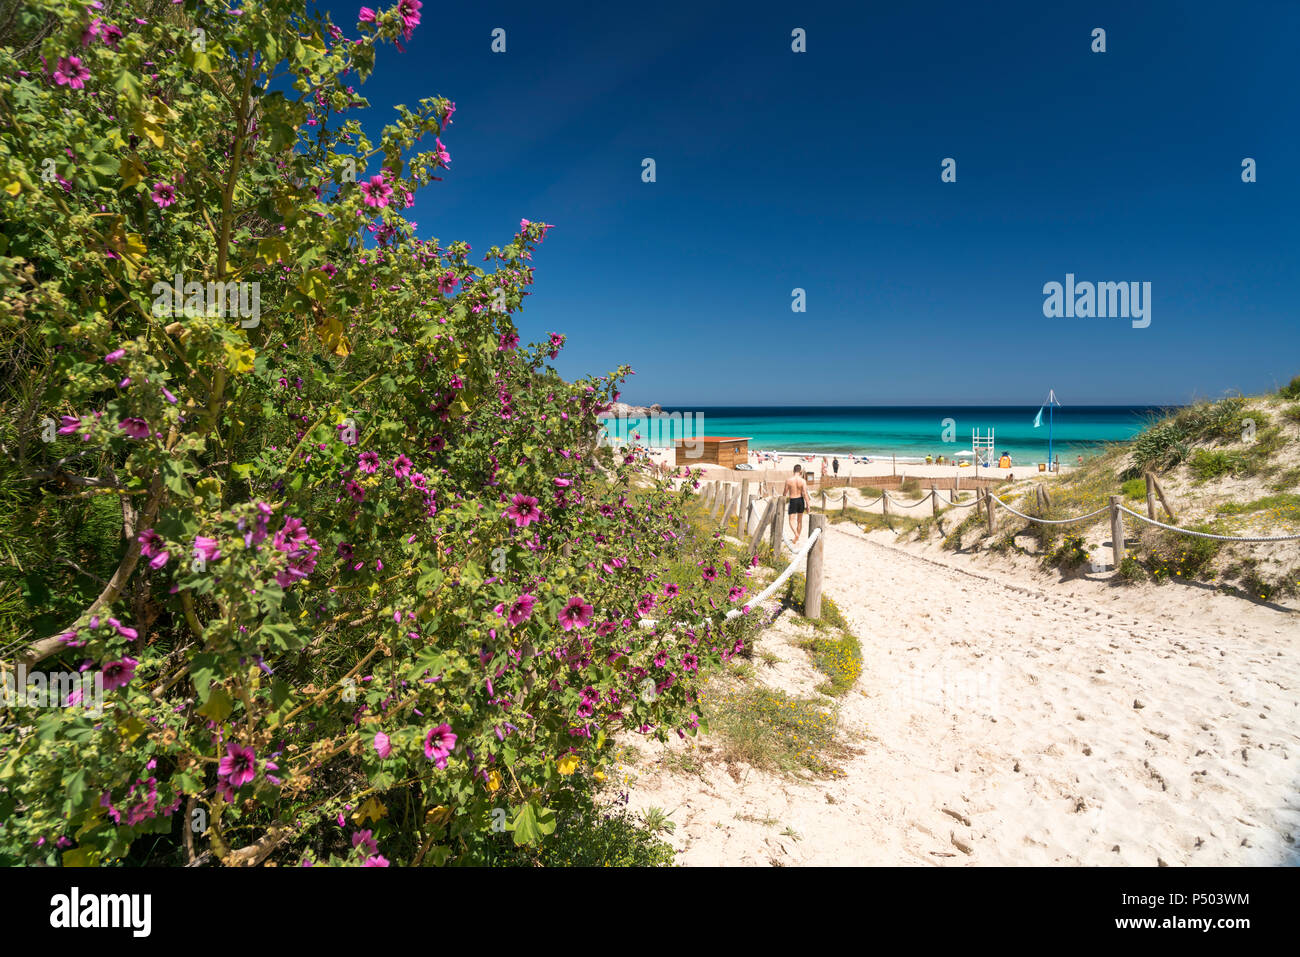 Spain, Balearic Islands, Mallorca, Cala Rajada, Cala Agulla, bay and beach Stock Photo